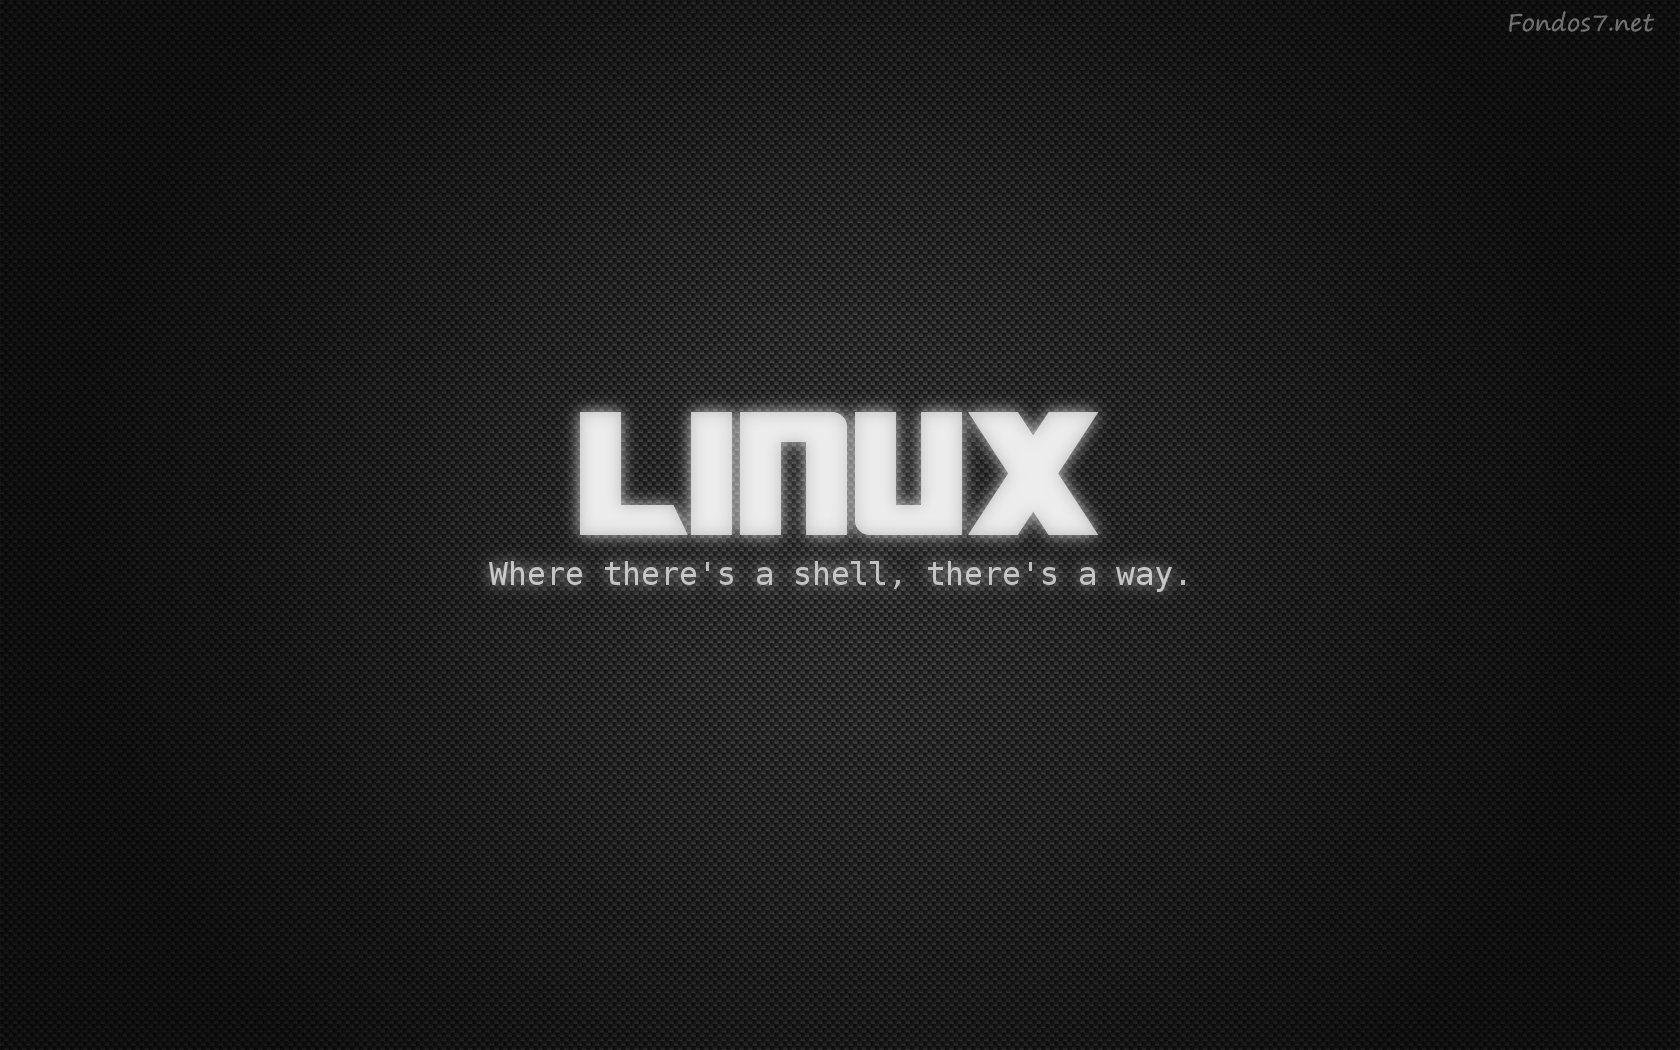  de pantalla linux shell wallpaper hd widescreen Gratis imagenes 5827